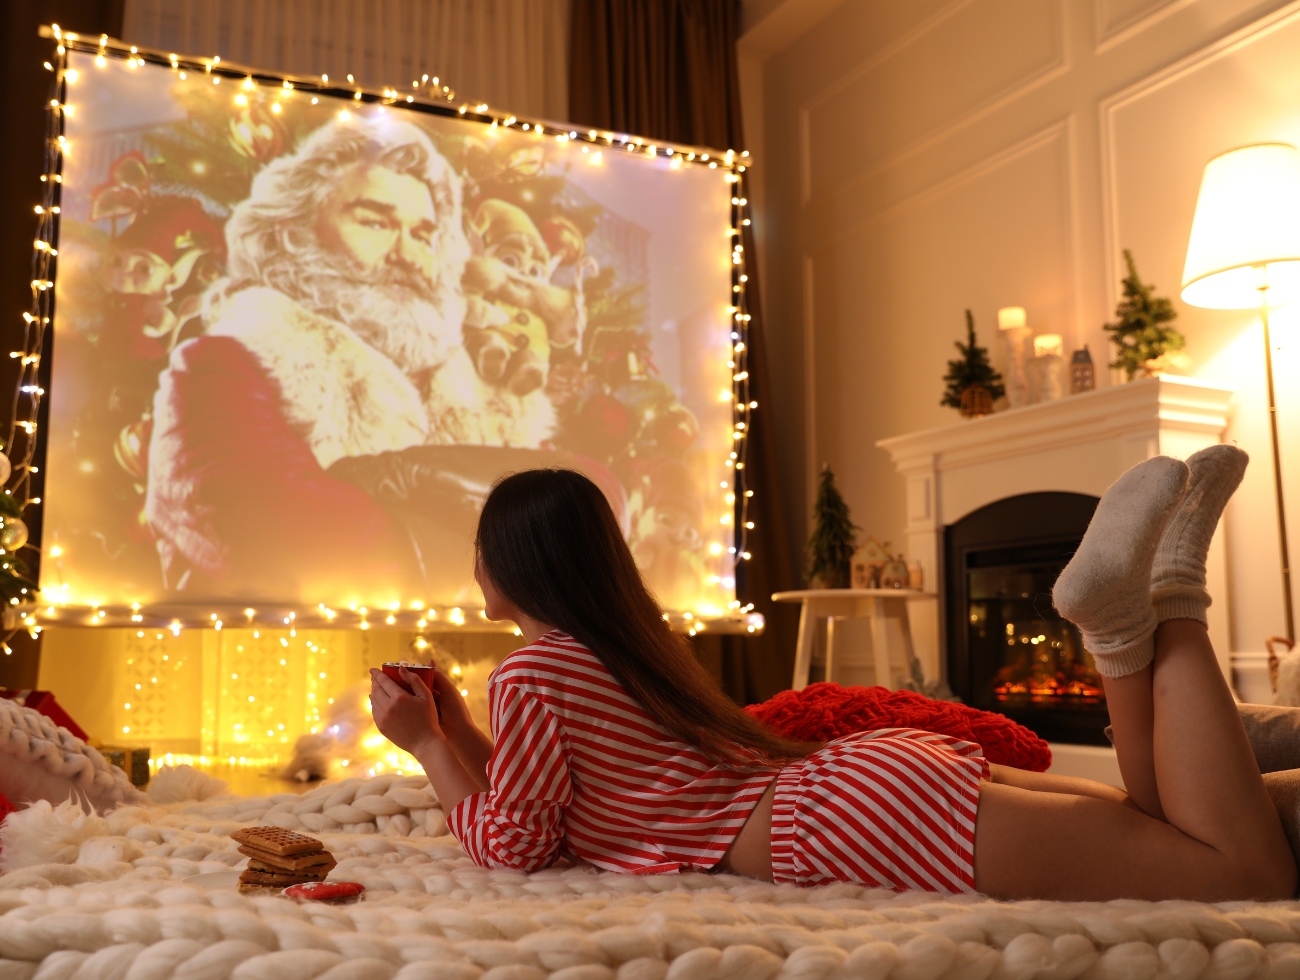 Eine Frau liegt auf einer Kuscheldecke, trinkt Tee und sieht einen Weihnachtsfilm über einen Beamer an.